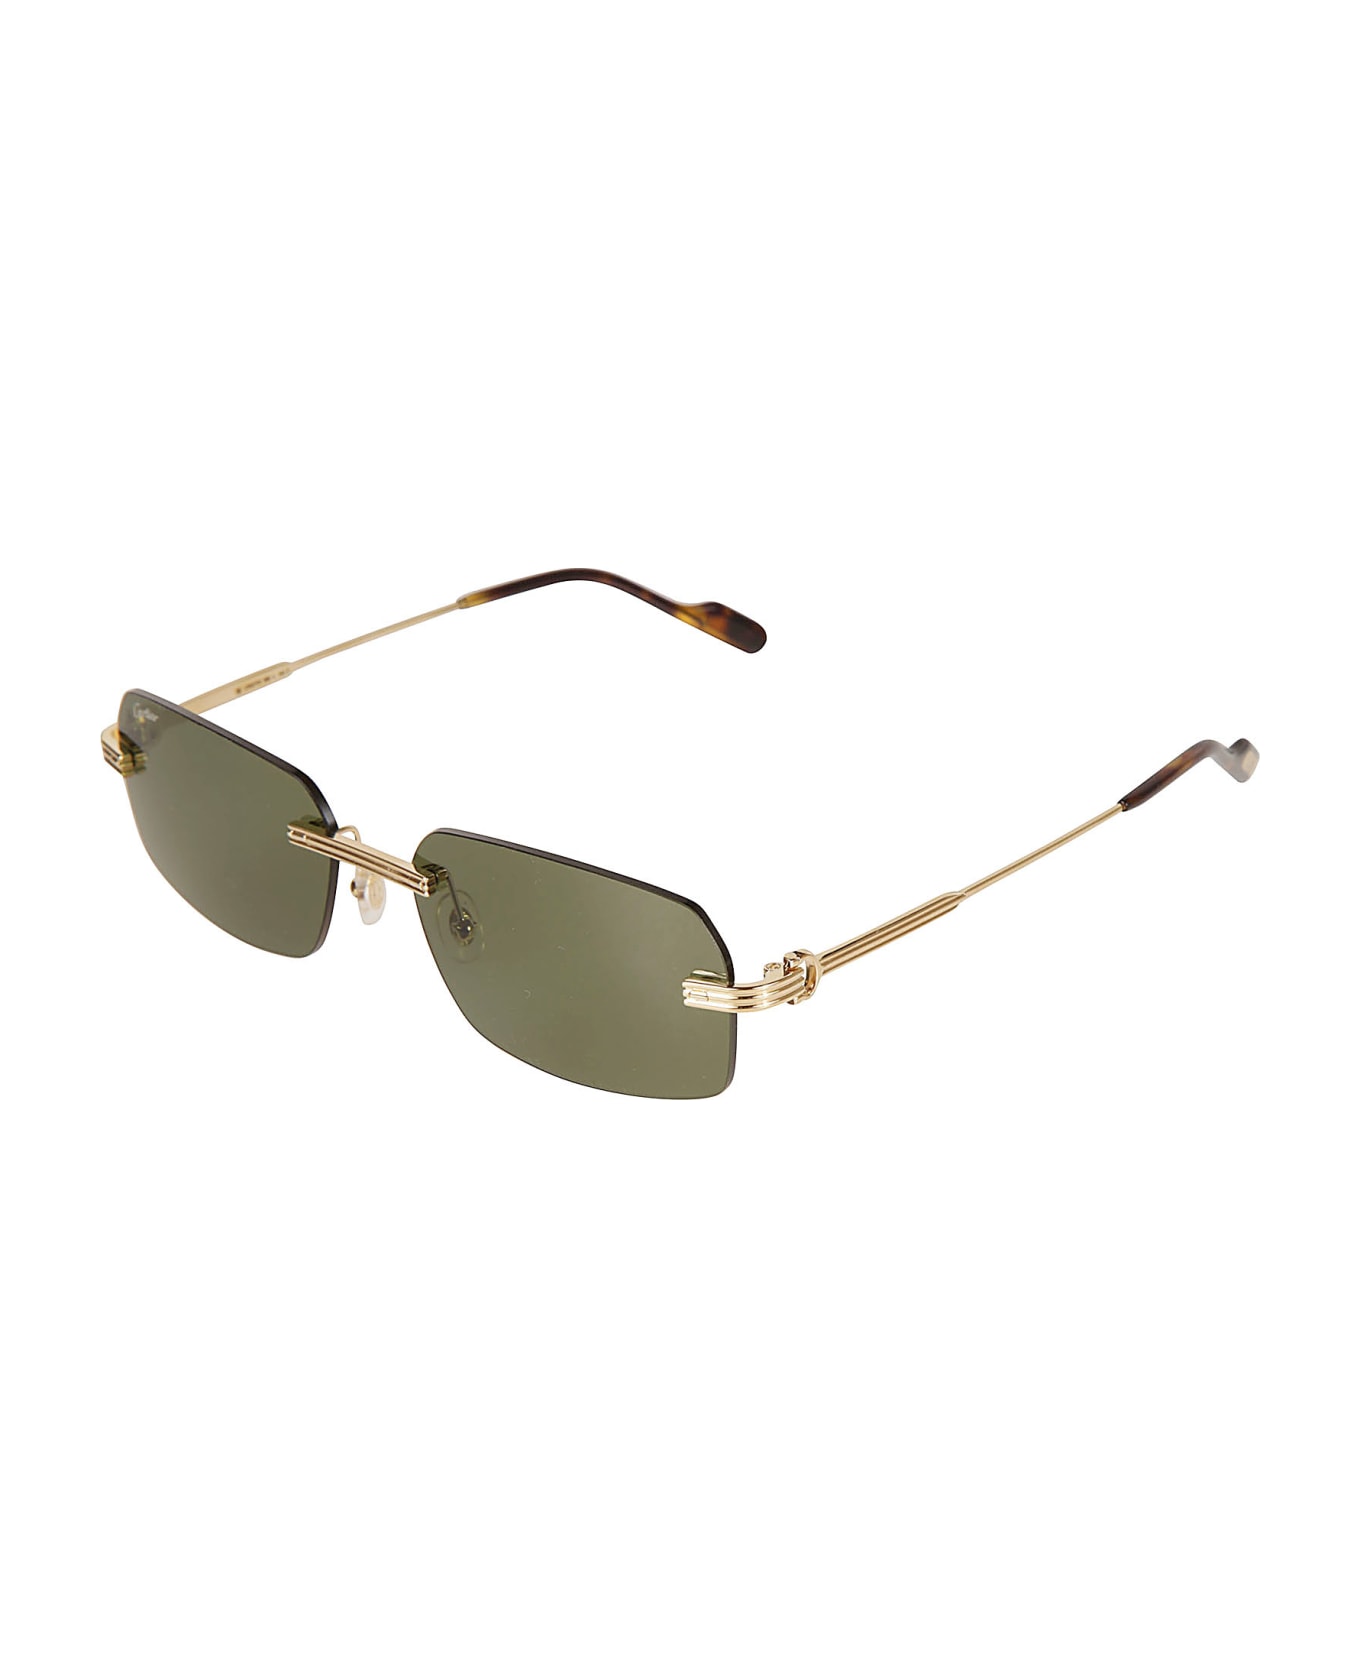 Cartier Eyewear Rectangle Rimless Sunglasses - 002 gold gold green